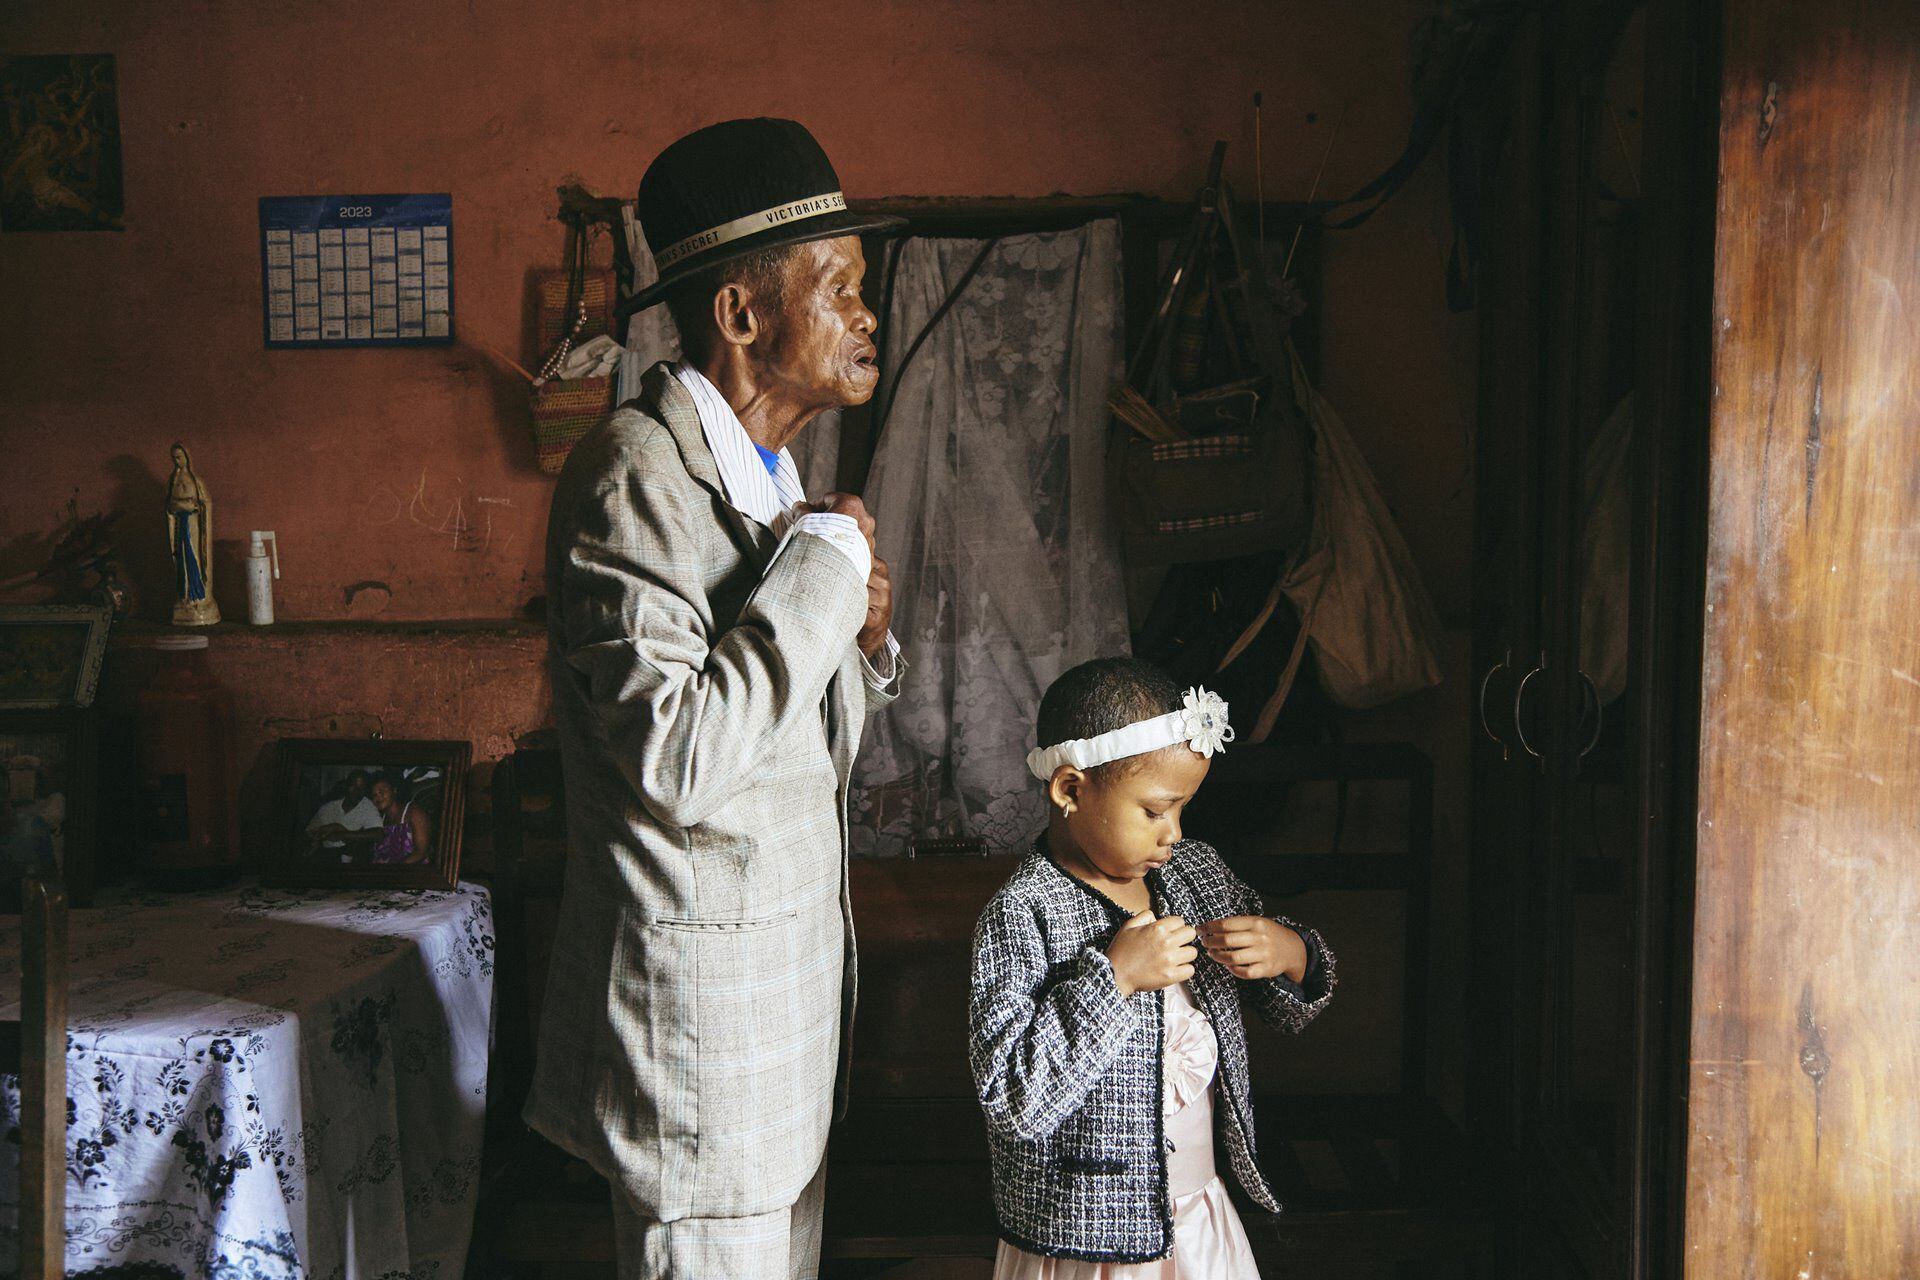 La fotógrafa de GEO, Lee-Ann Olwage, de Sudáfrica ganó la categoría de historia del año con imágenes que documentan la demencia en Madagascar. Mufananidzo: Lee-Ann Olwage